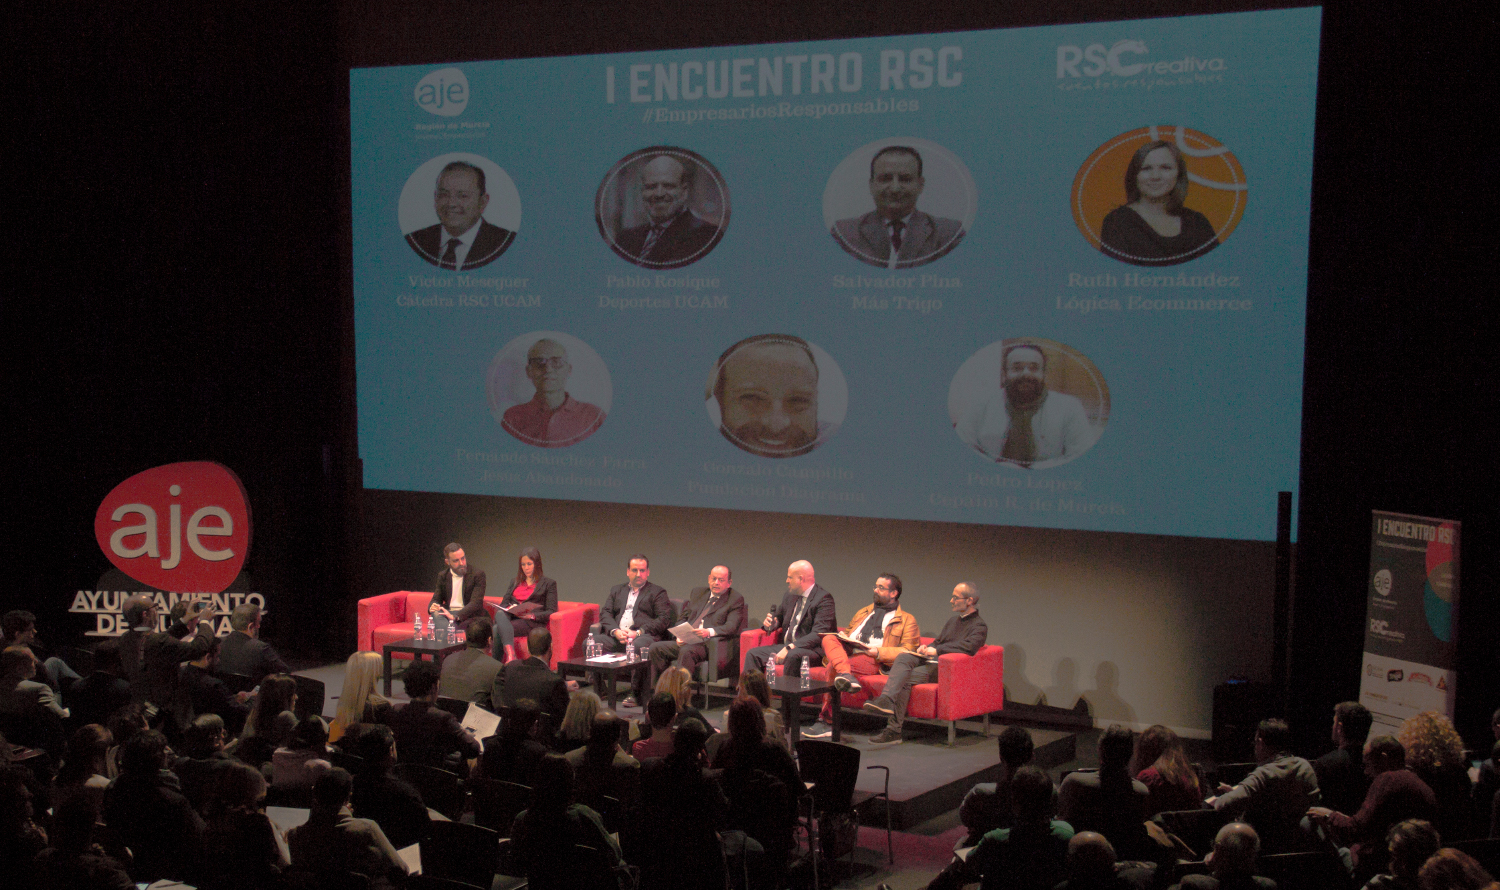 La Red Nodus participa en el I Encuentro RSC ‘Empresarios Responsables’ organizada por AJE Región de Murcia